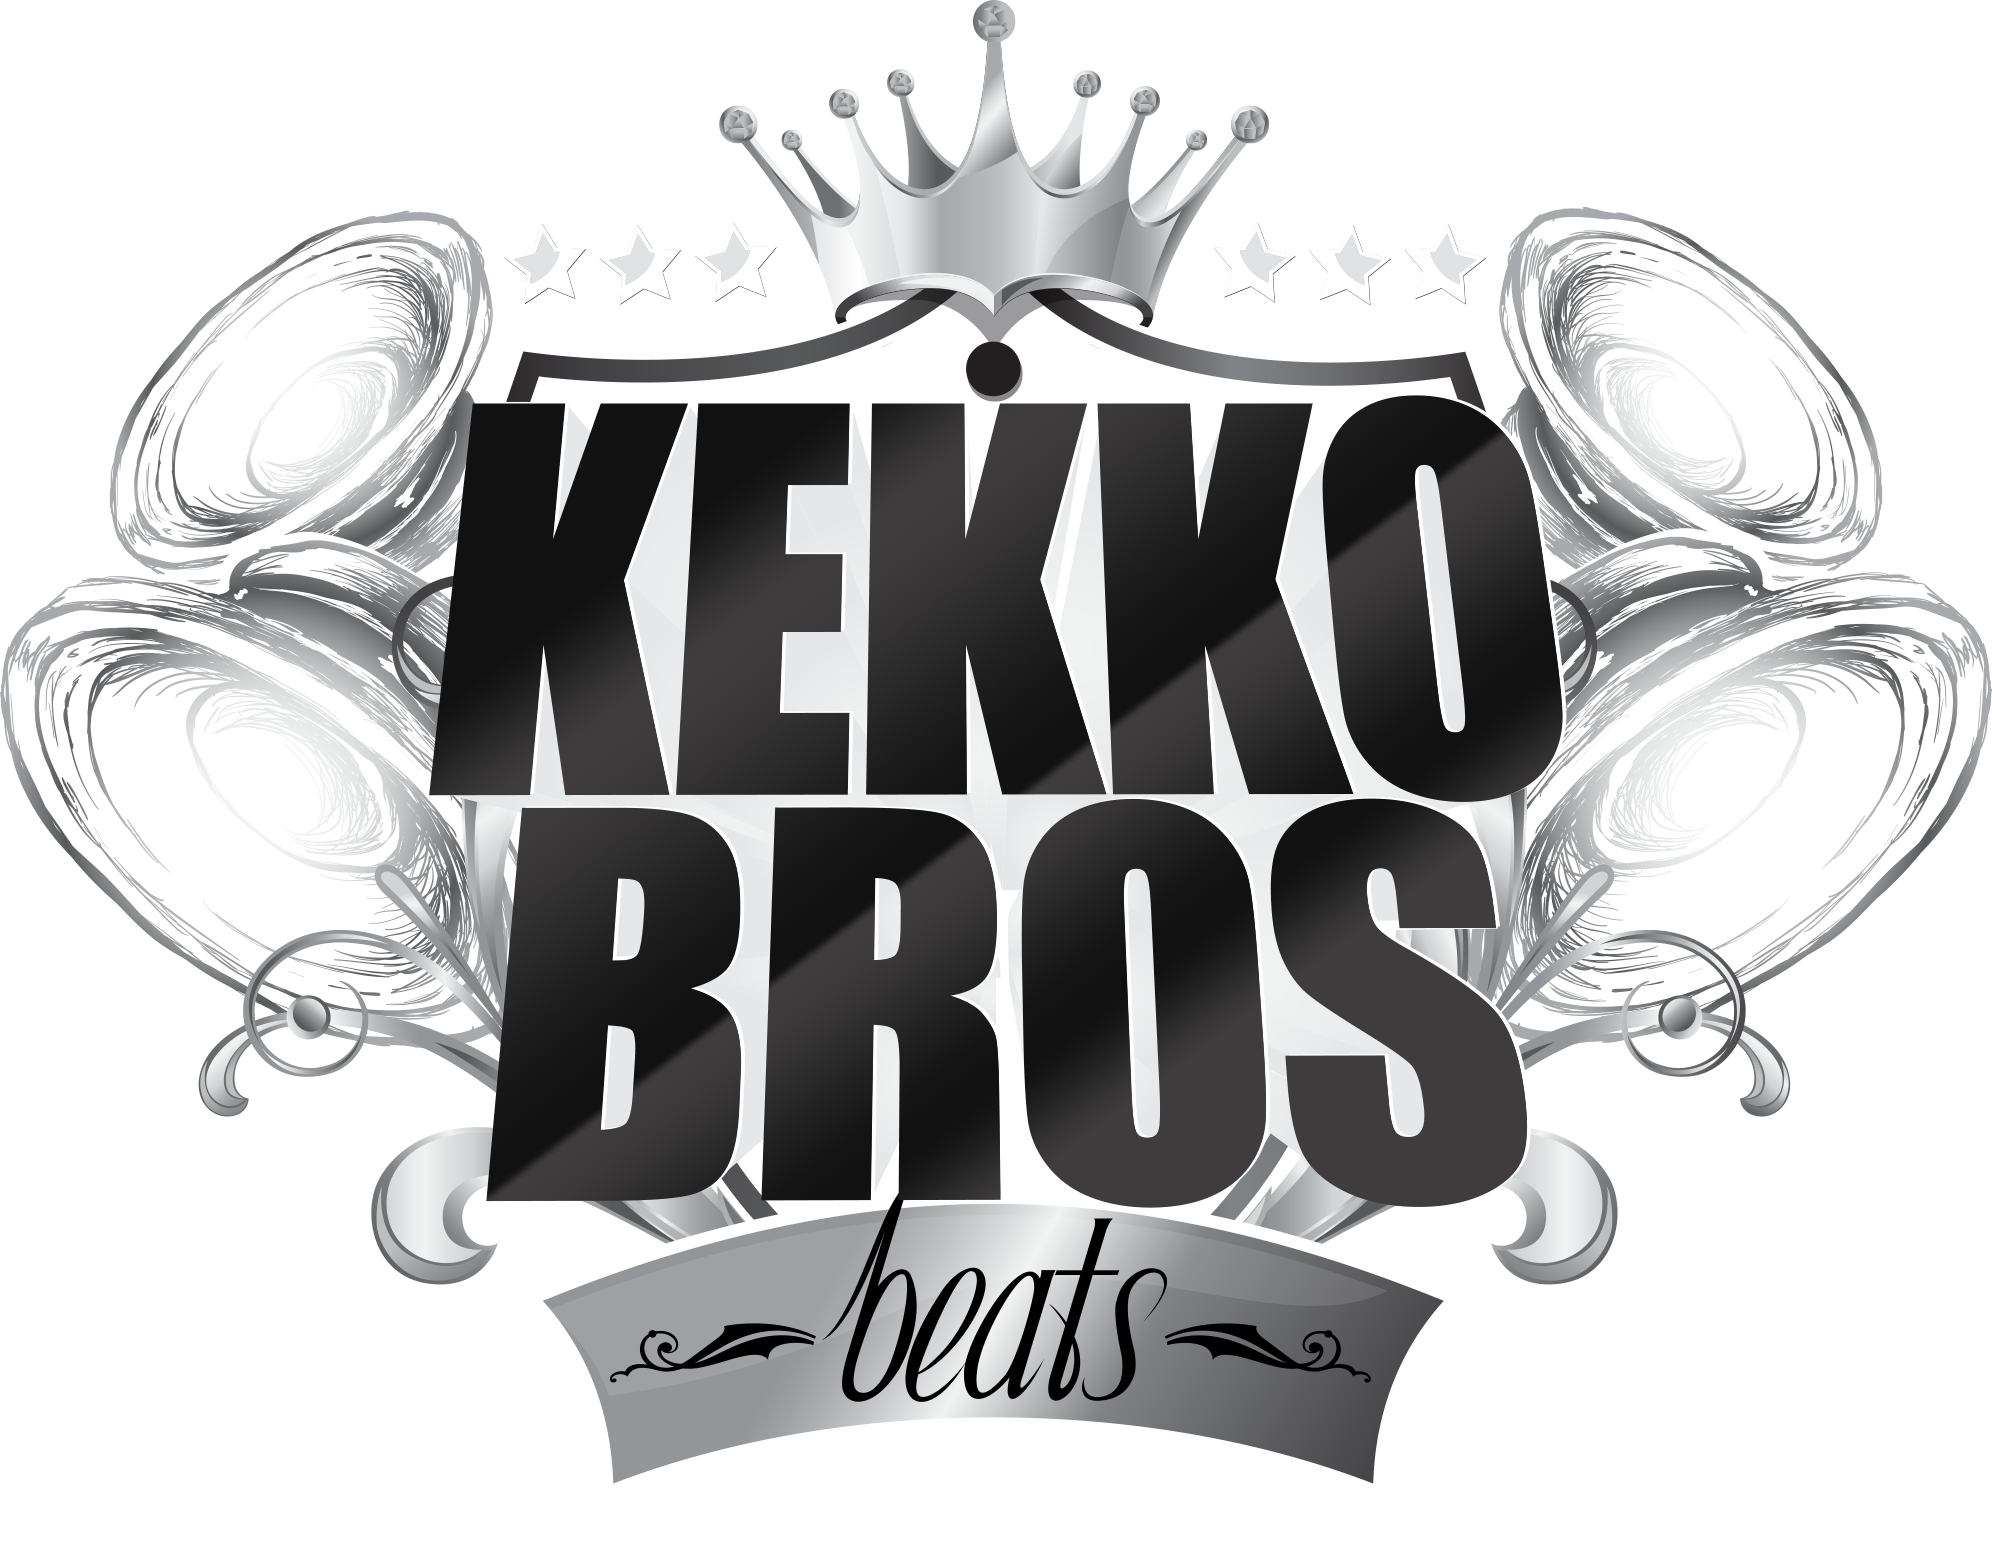 kekko bros beats instant store